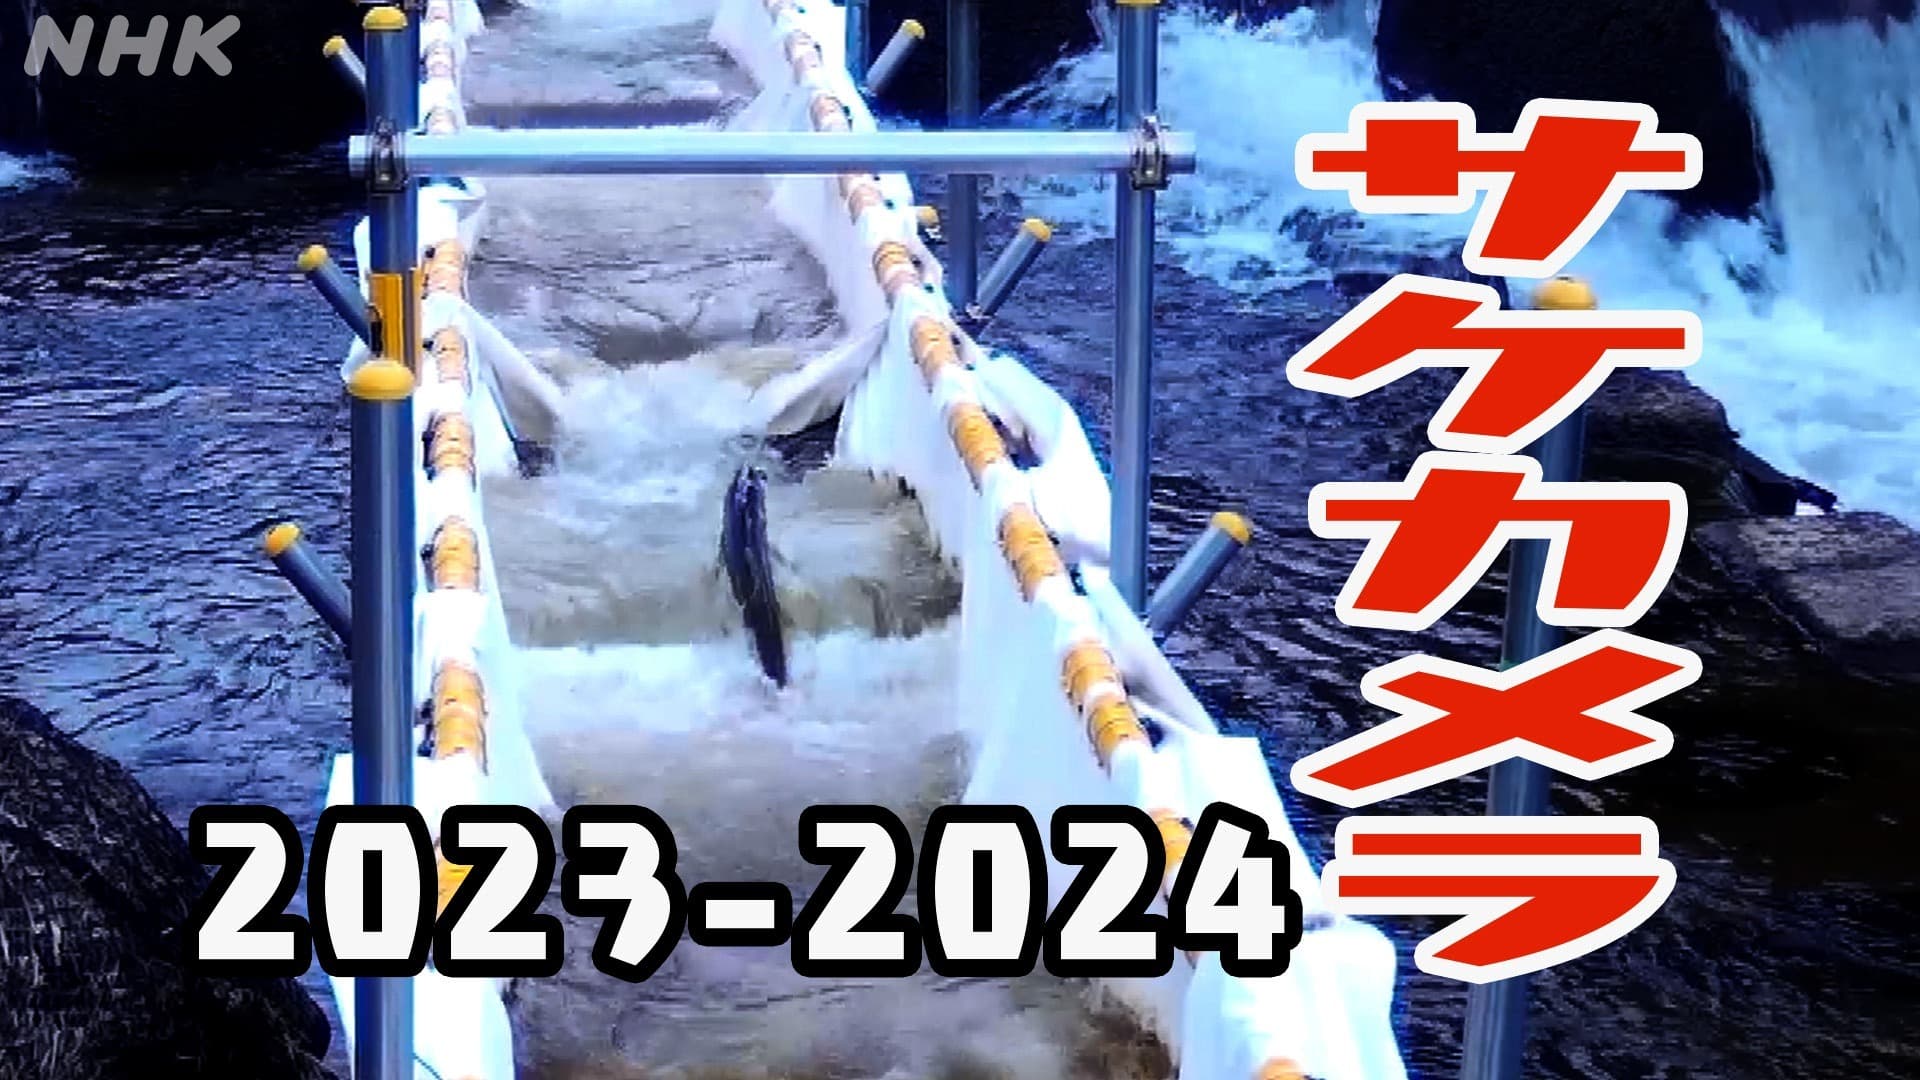 サケカメラ 2023-2024 札幌 豊平川を見る 0755DDチャンネル